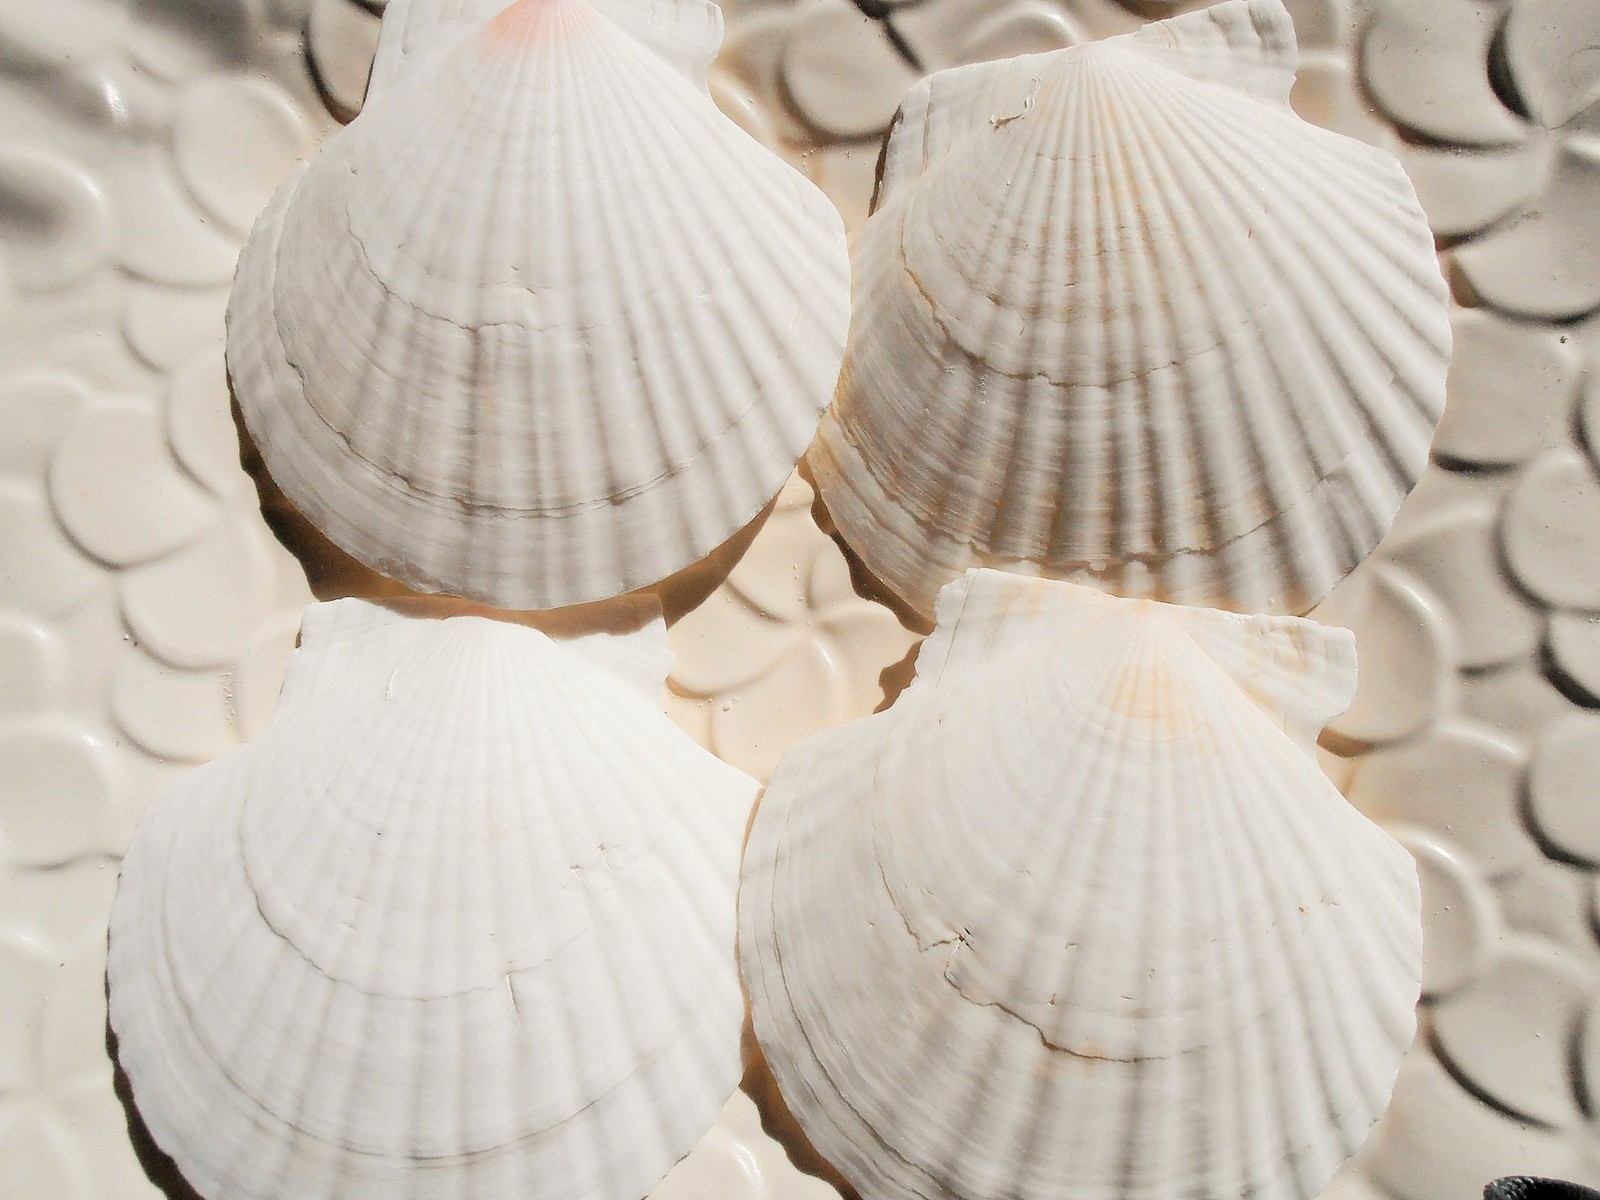 A品 きれいな 白い ホタテの貝 一番の贈り物 ハワイアンインテリア ディスプレイ クッキングプレートなどに 天然素材 白い貝殻 ハワイインテリア シェルプレート 約１１cm ソープディッシュ ジュエリープレート ４枚セット ホタテ貝殻 【2021新作】